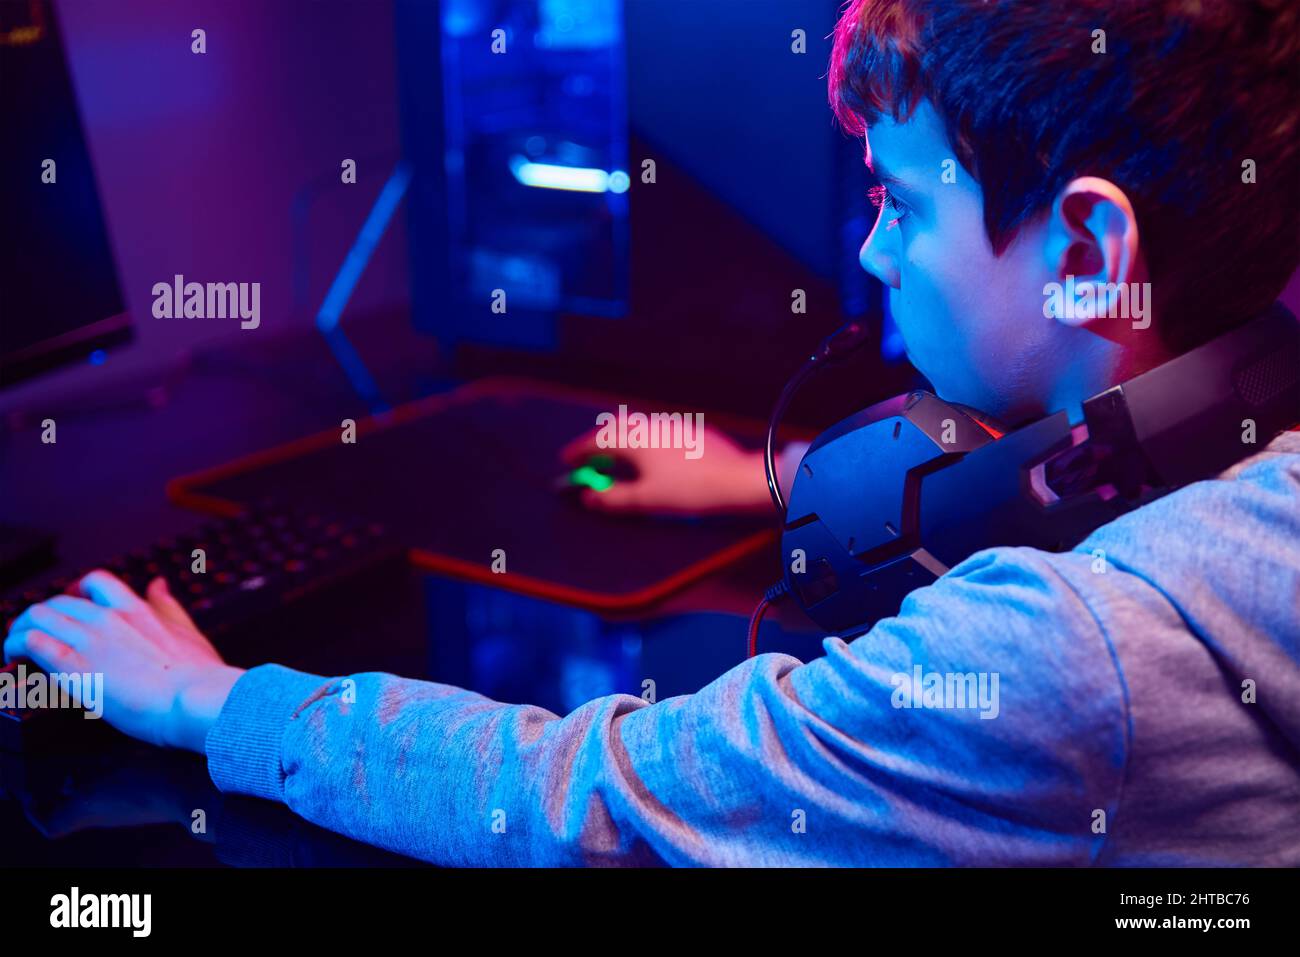 Un adolescent joue à un jeu vidéo informatique dans une pièce sombre,  utilise un clavier mécanique rvb couleur néon, un espace de travail pour  les jeux de cybersport, la dépendance des enfants